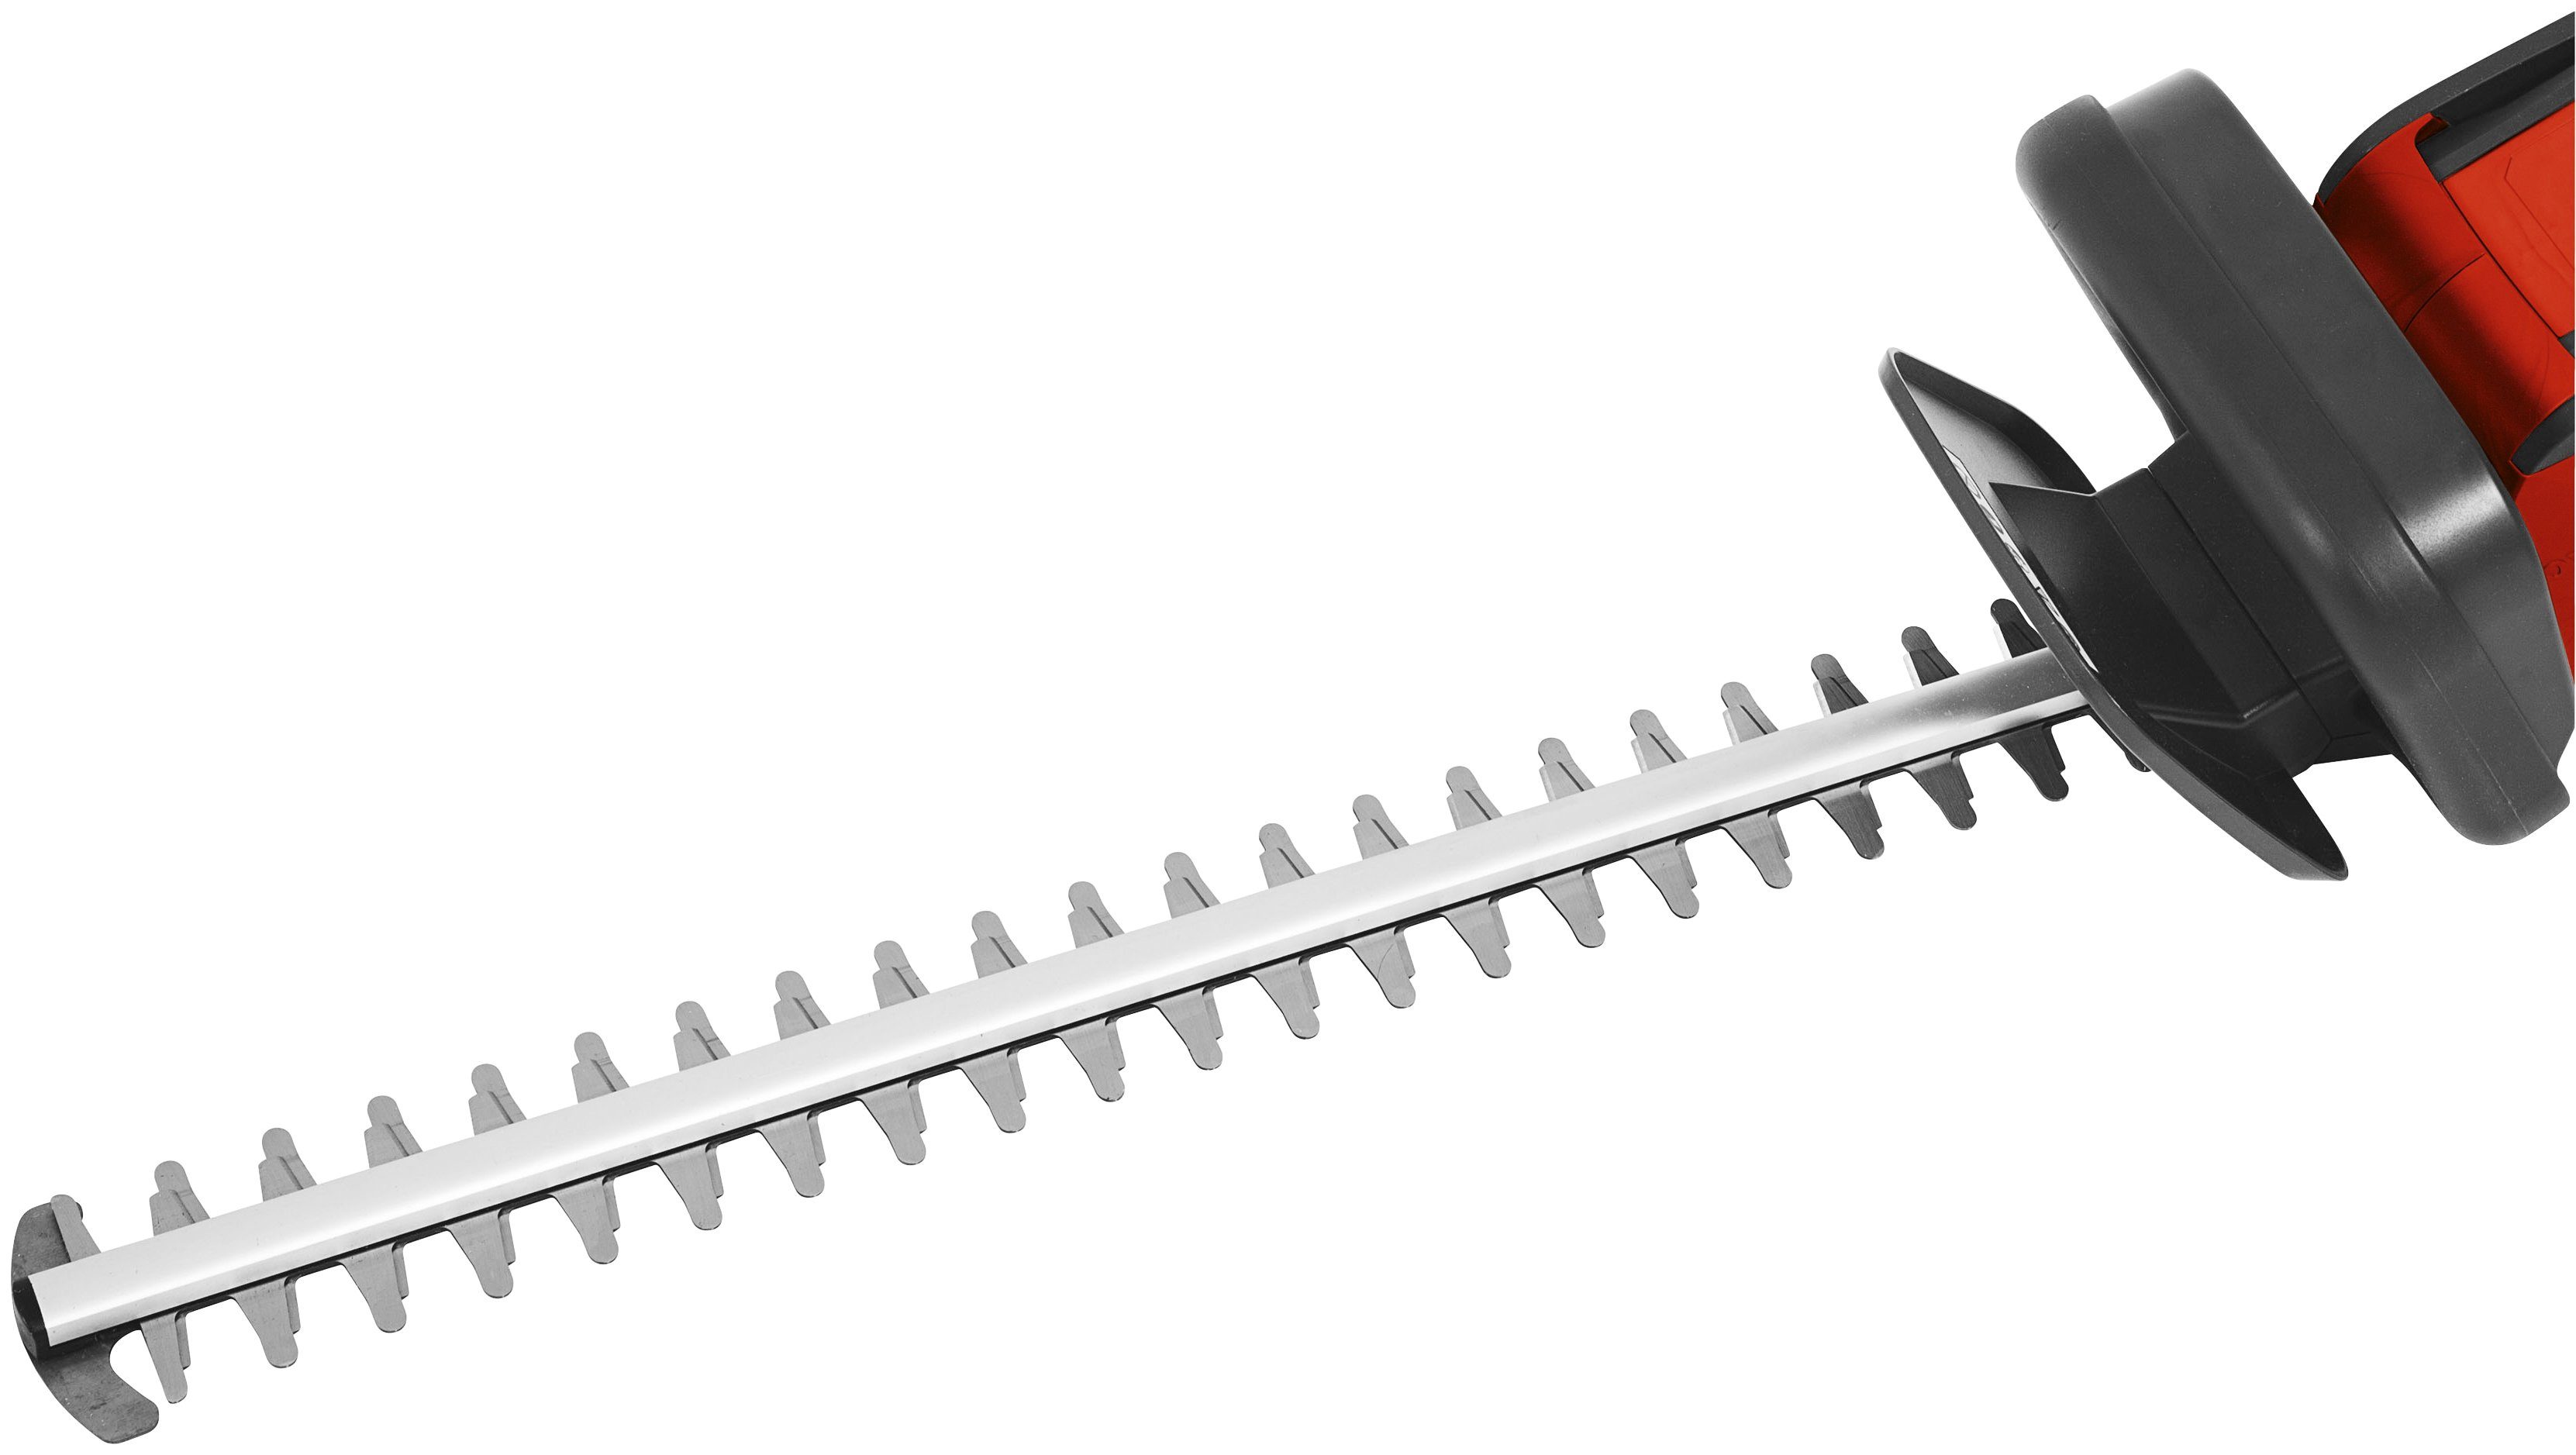 Grizzly Tools Akku-Heckenschere »AHS 4055 Lion Set«, 55 cm Schnittlänge, mit Akku und Ladegerät